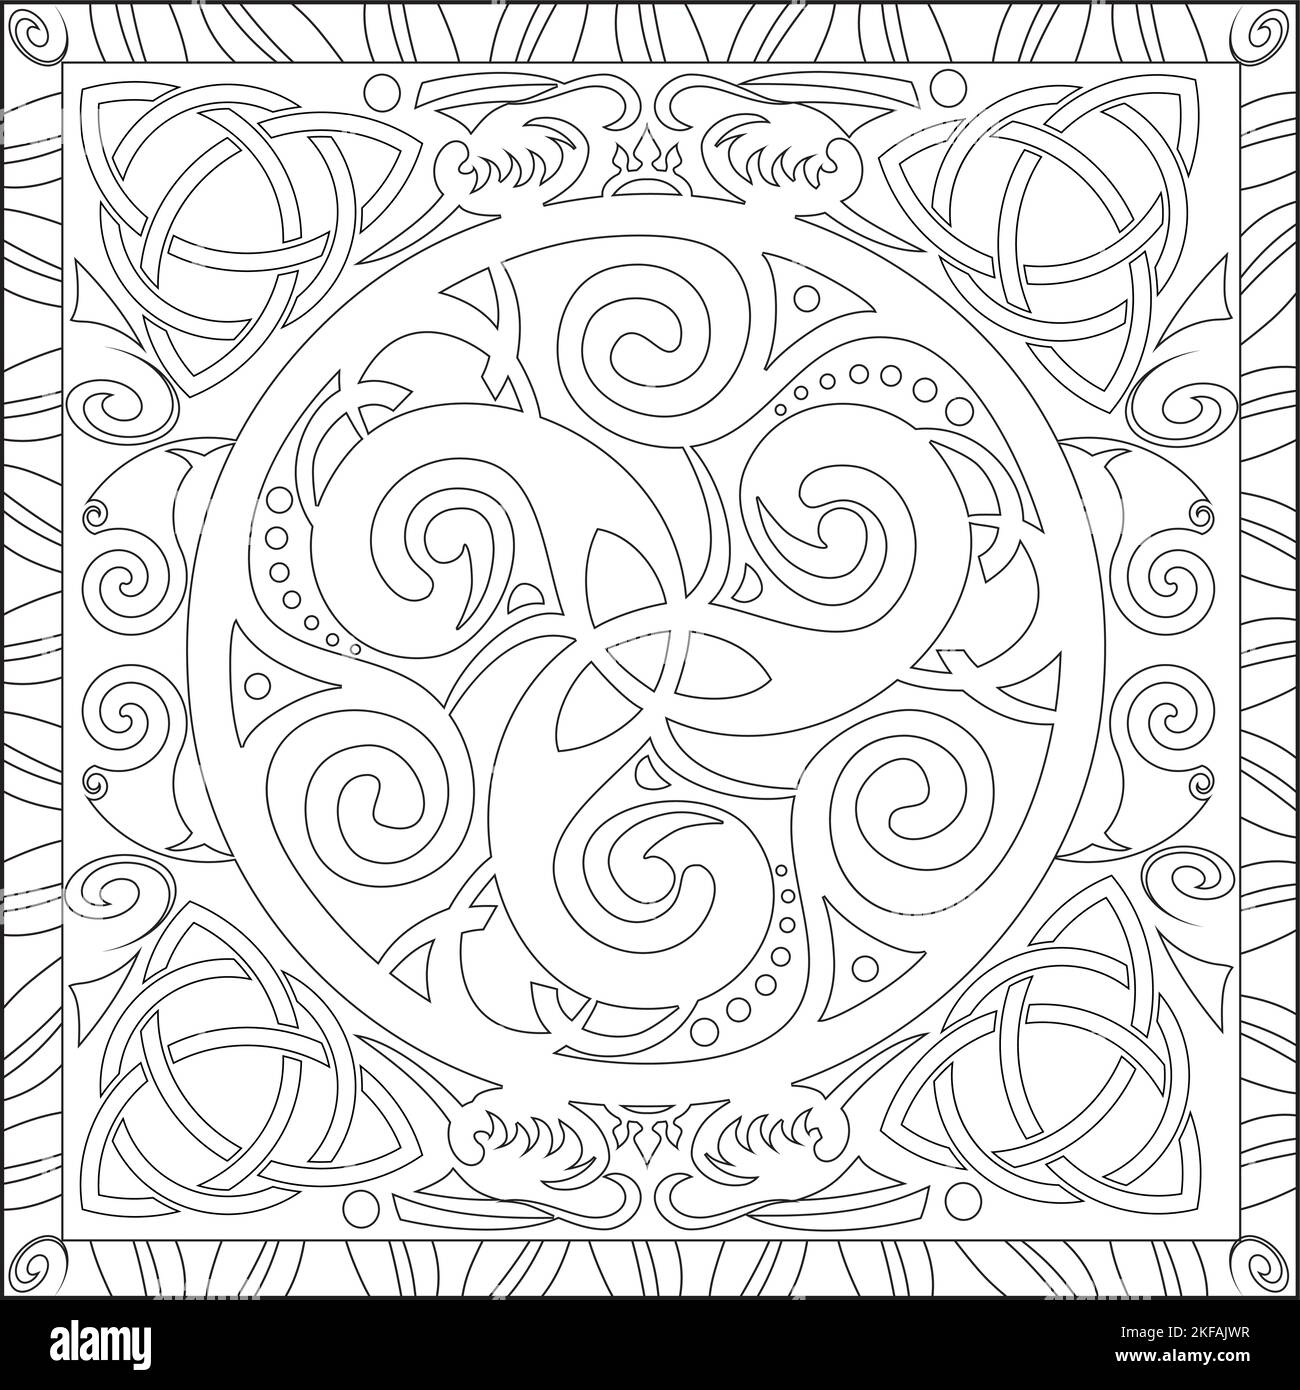 Malvorlagen Illustration im Square Format für Erwachsene, Trsikelion Celtic Knot Mandala Design Stock Vektor